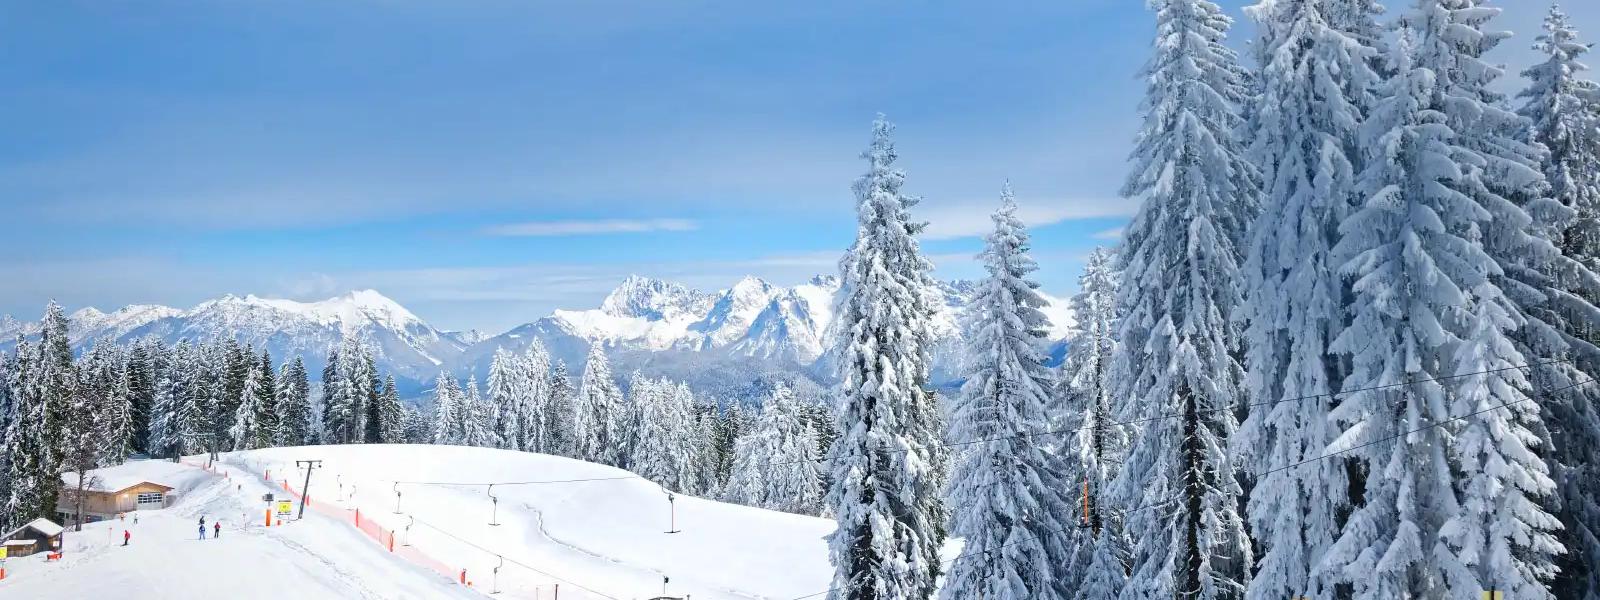 Ferienwohnungen und Ferienhäuser für Skiurlaub in der Schweiz - e-domizil